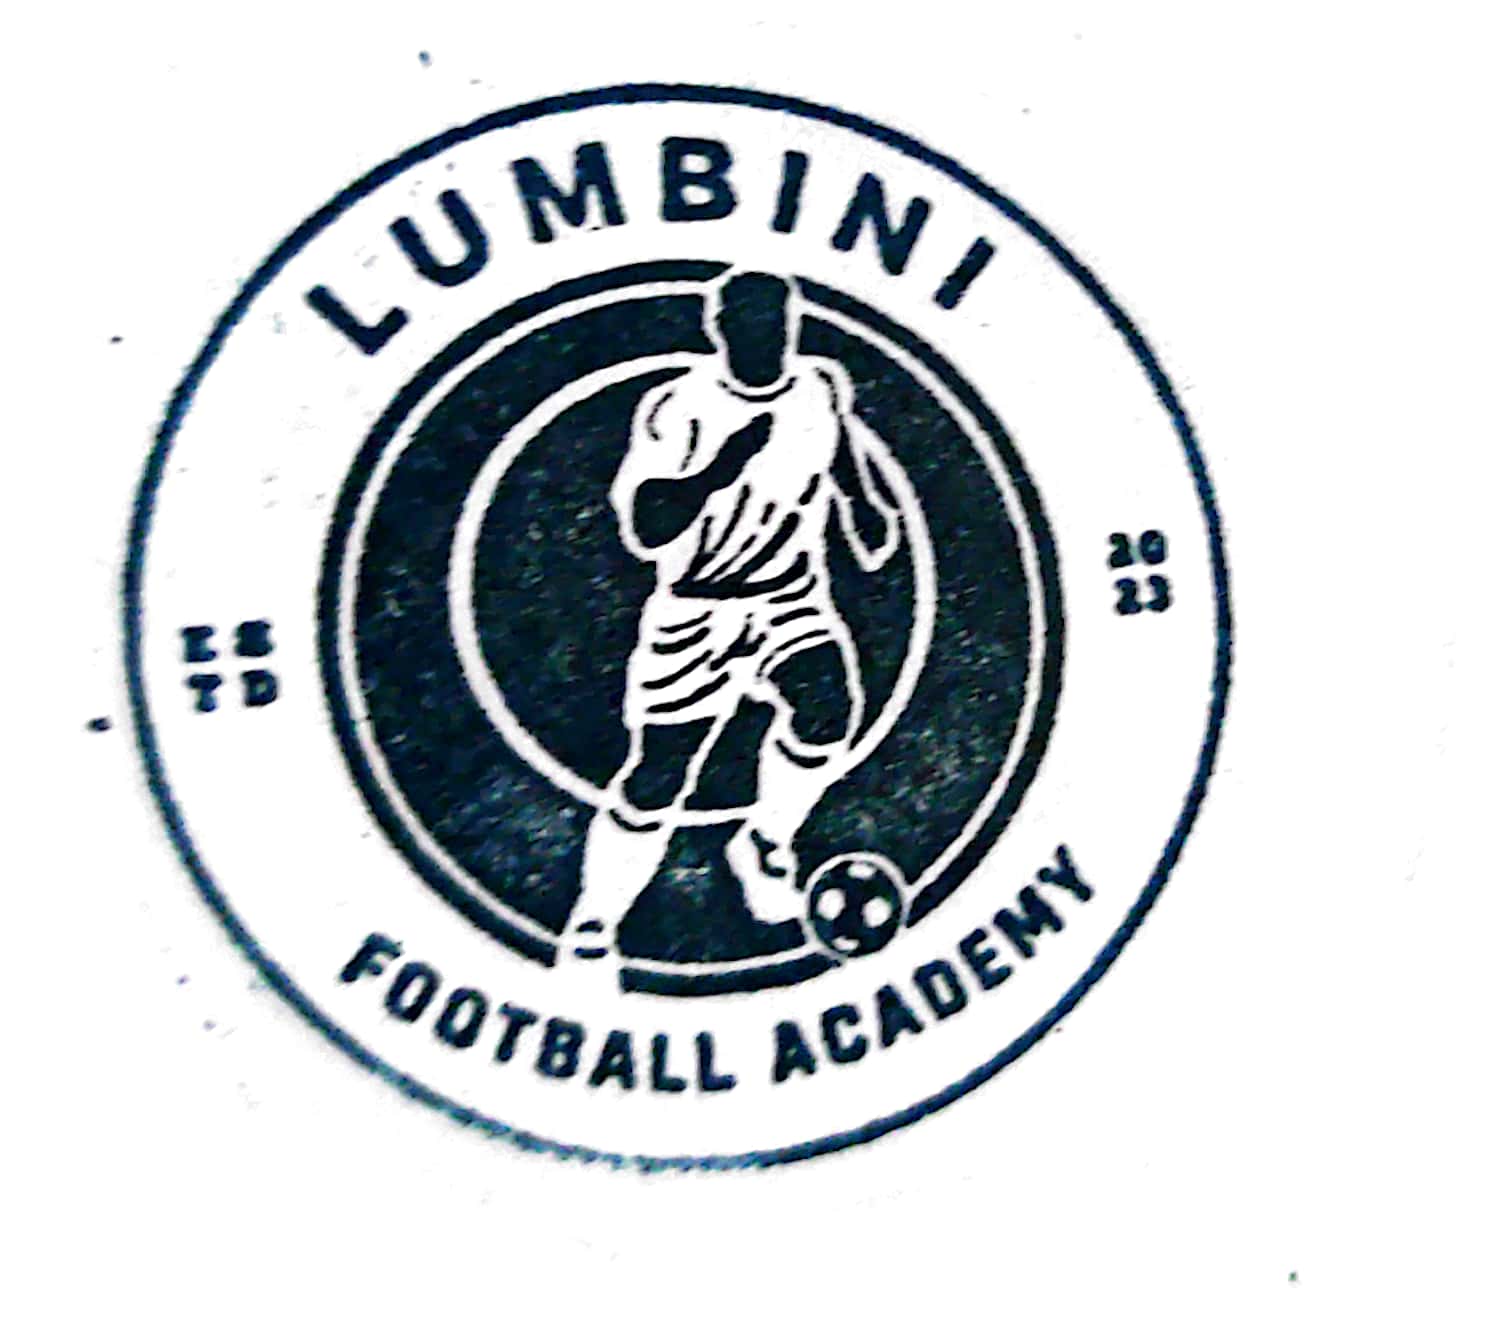 Lumbini Football Academy